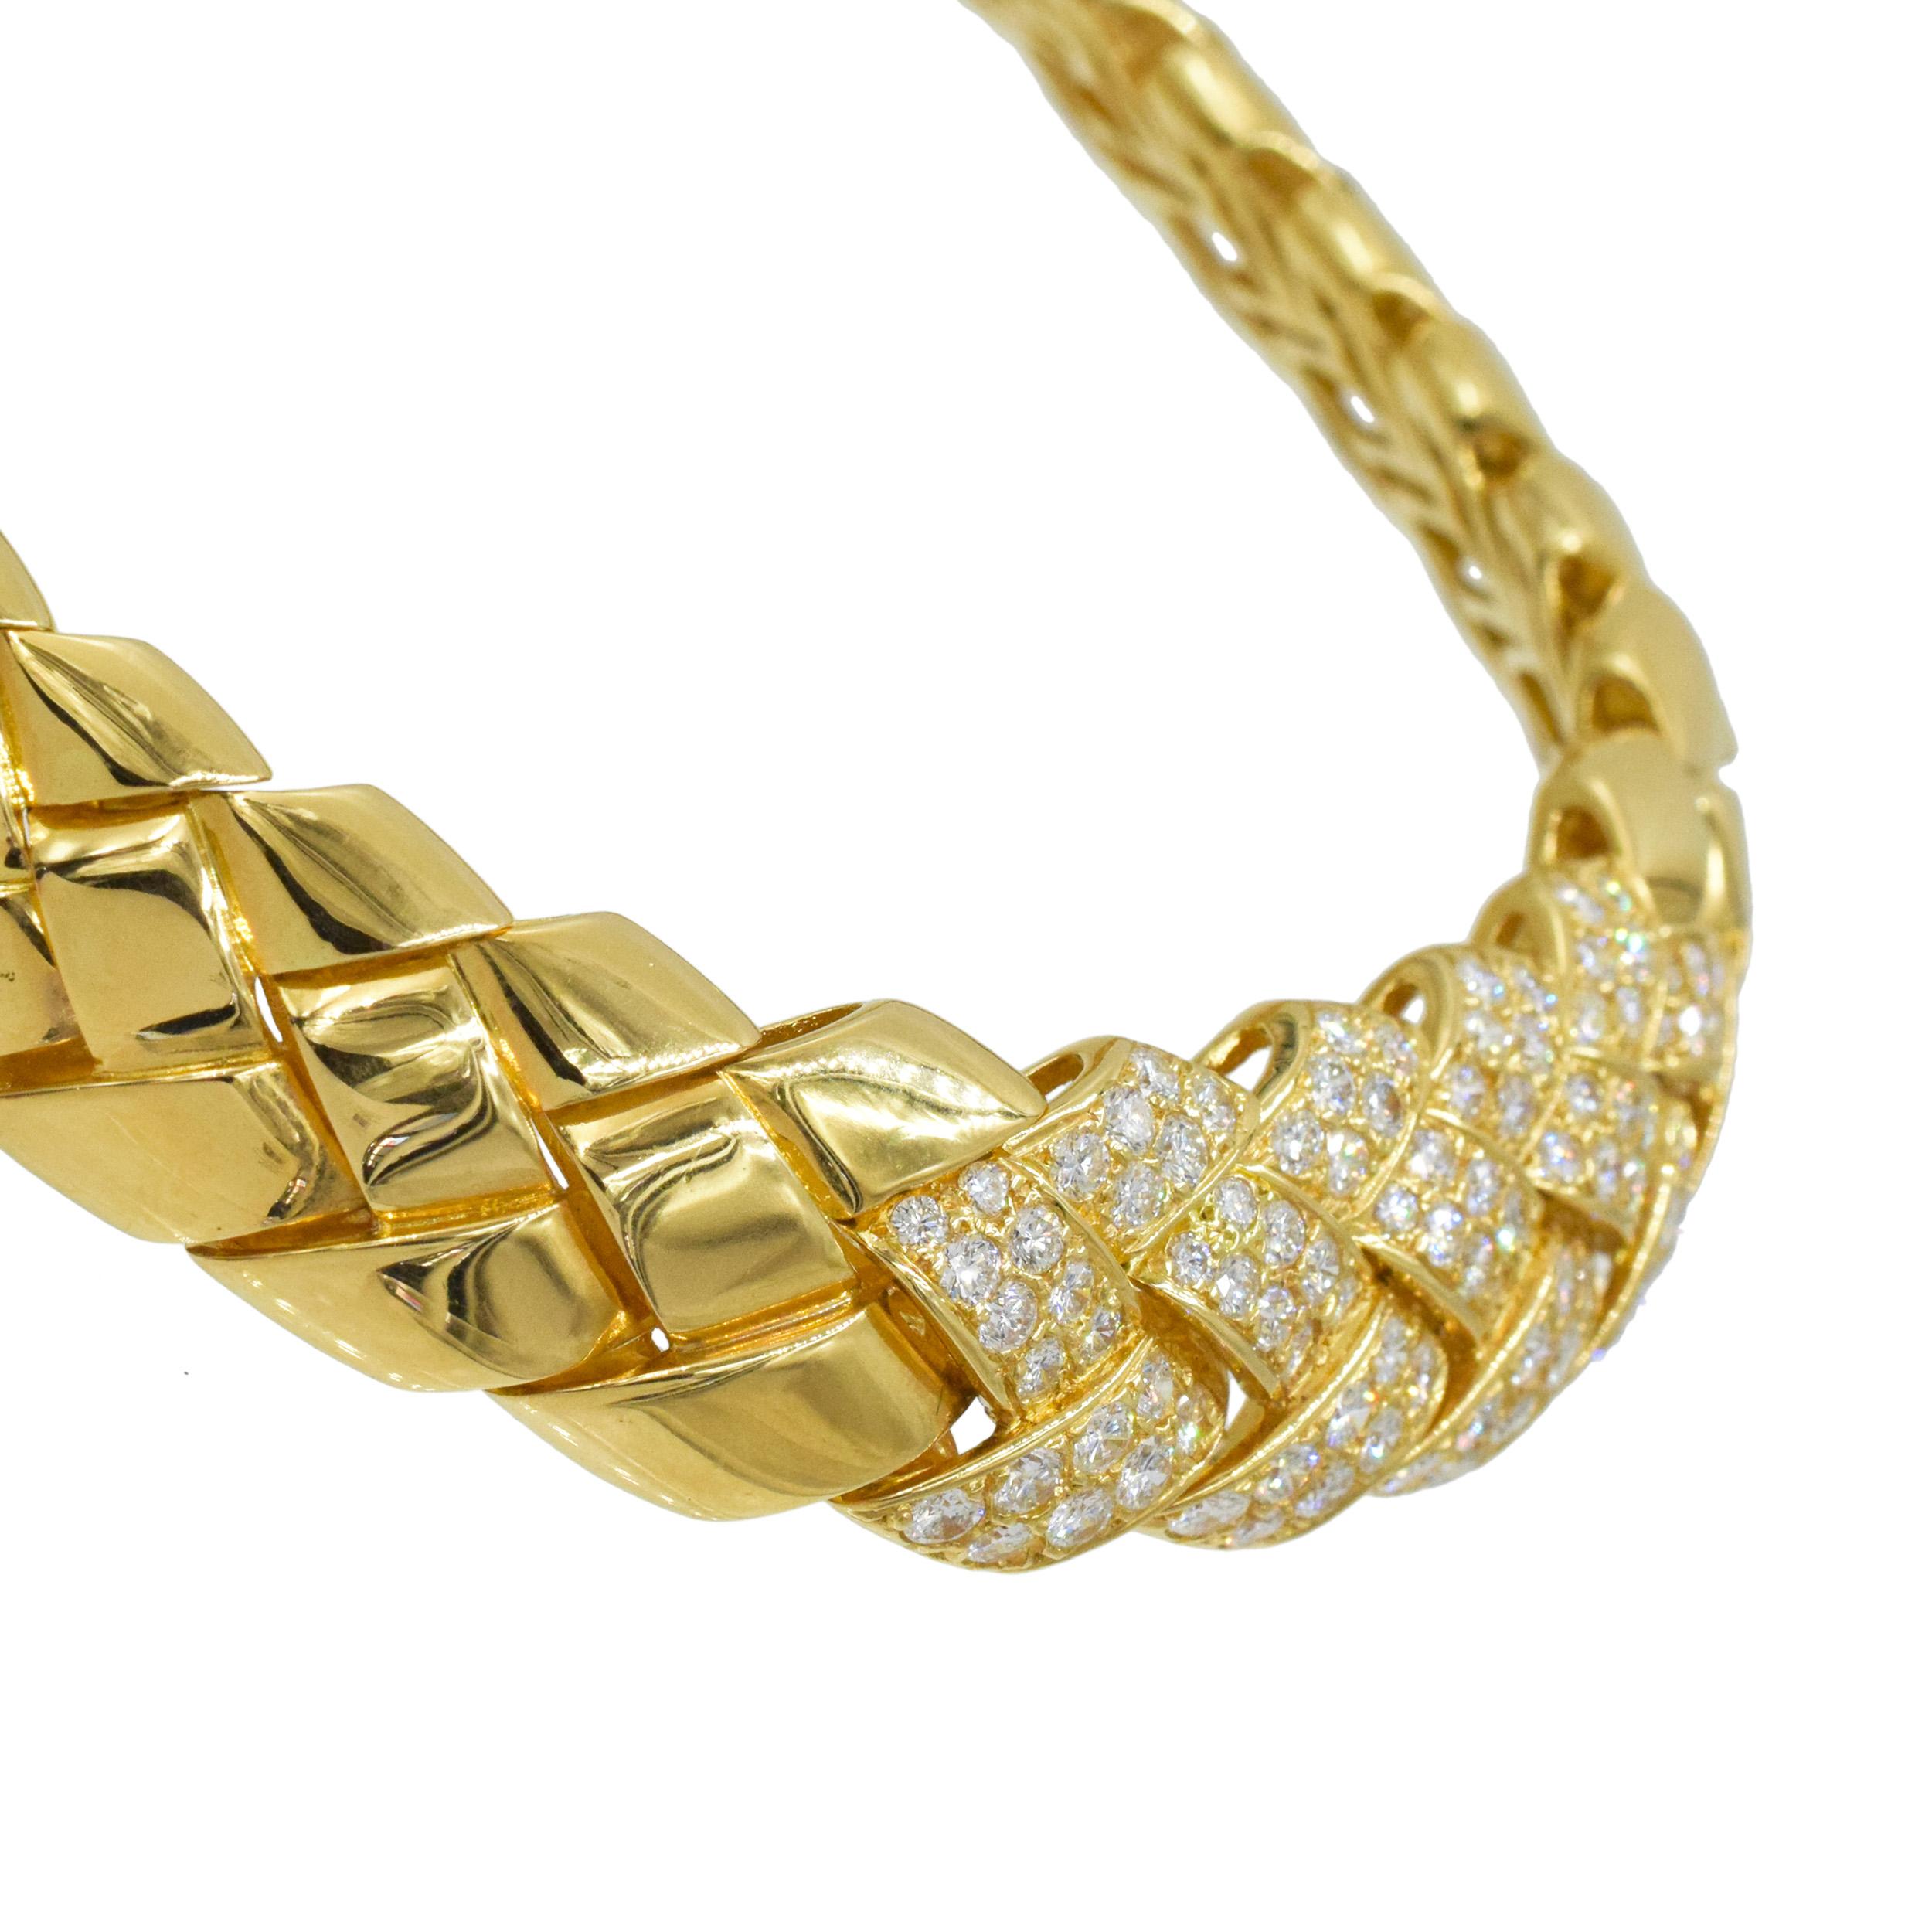 Van Cleef & Arpels Diamanten und Gelbgold Halskette Diese Halskette hat ein gewebtes Motiv mit 96 runden Diamanten mit einem Gewicht von ca. 6 Karat alle in 18k gefasst  Gelbgold. Signiert Van Cleef & Arpels,
 750, Seriennummer xxxx
Made in France